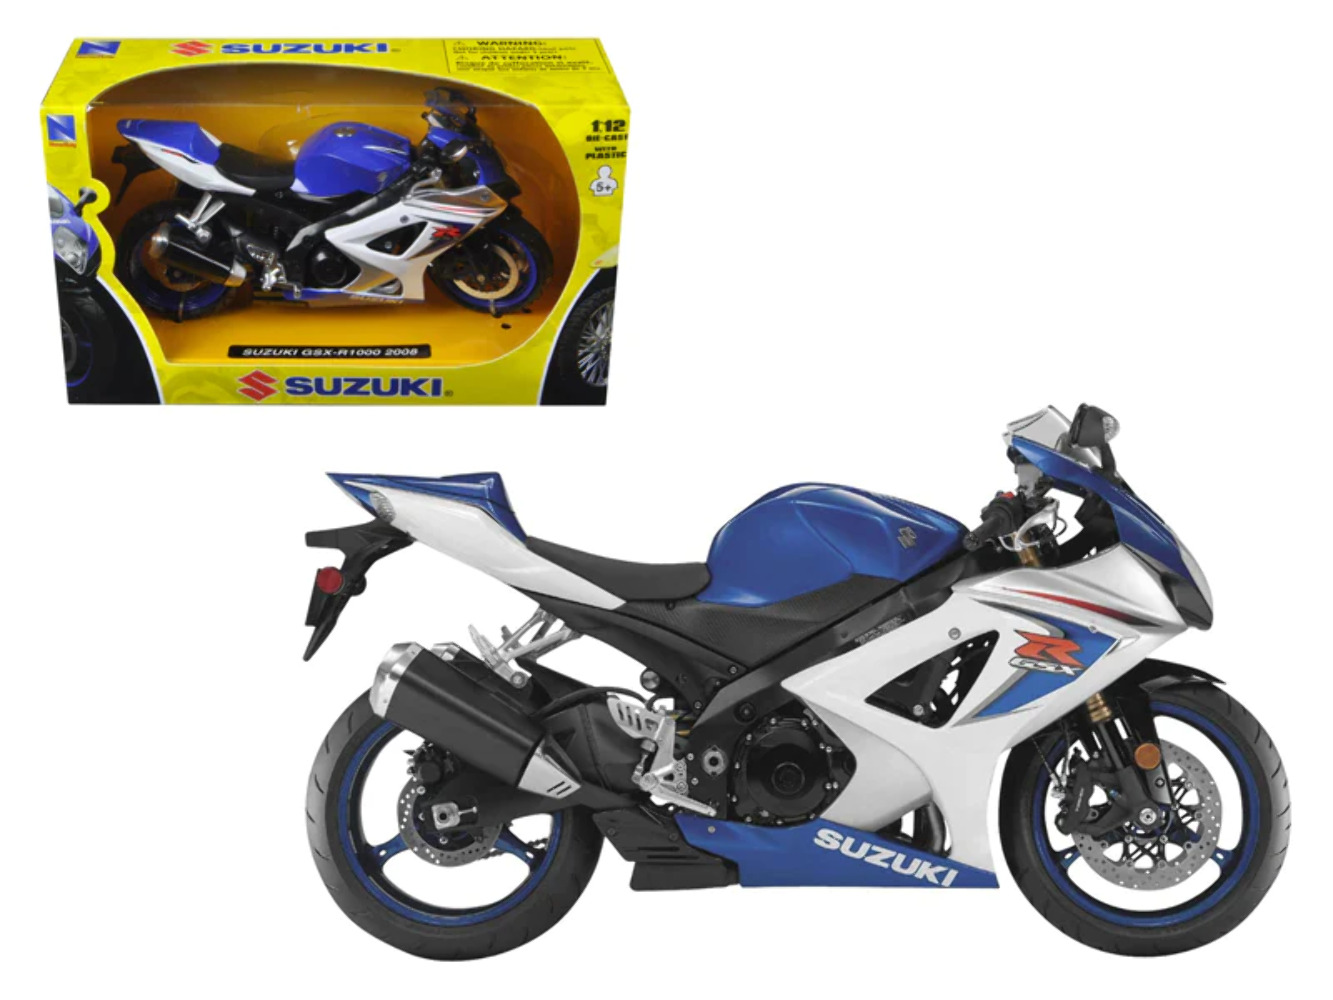 2008 Suzuki GSX-R1000 Blue Bike Motorcycle 1/12